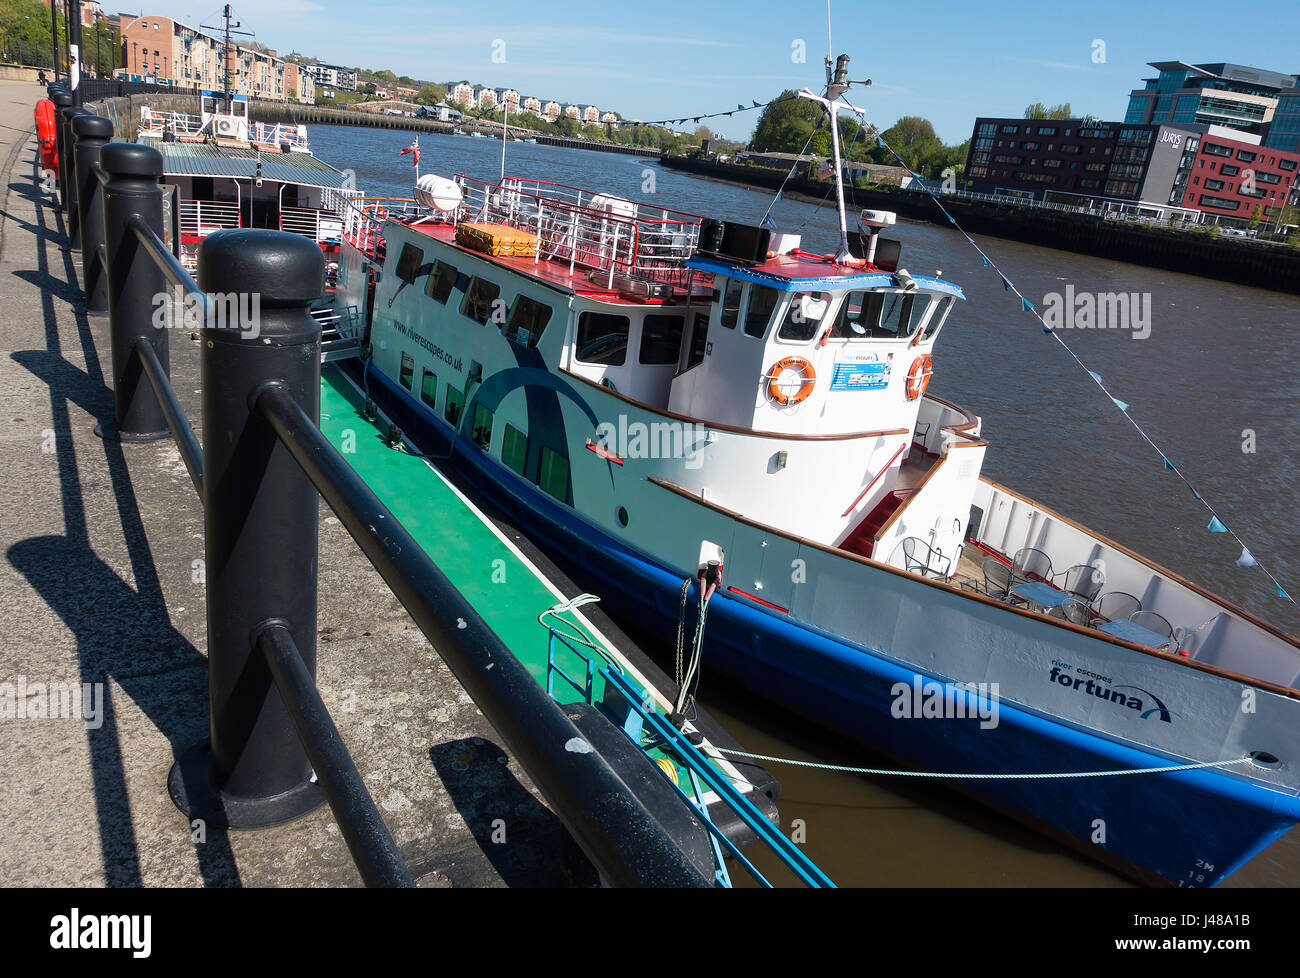 Das Touristenboot Fortuna, das für Flussfahrten mit Flussfahrten auf den Flüssen genutzt wird, liegt in Newcastle upon Tyne Quayside Tyne und trägt England Vereinigtes Königreich Großbritannien Stockfoto